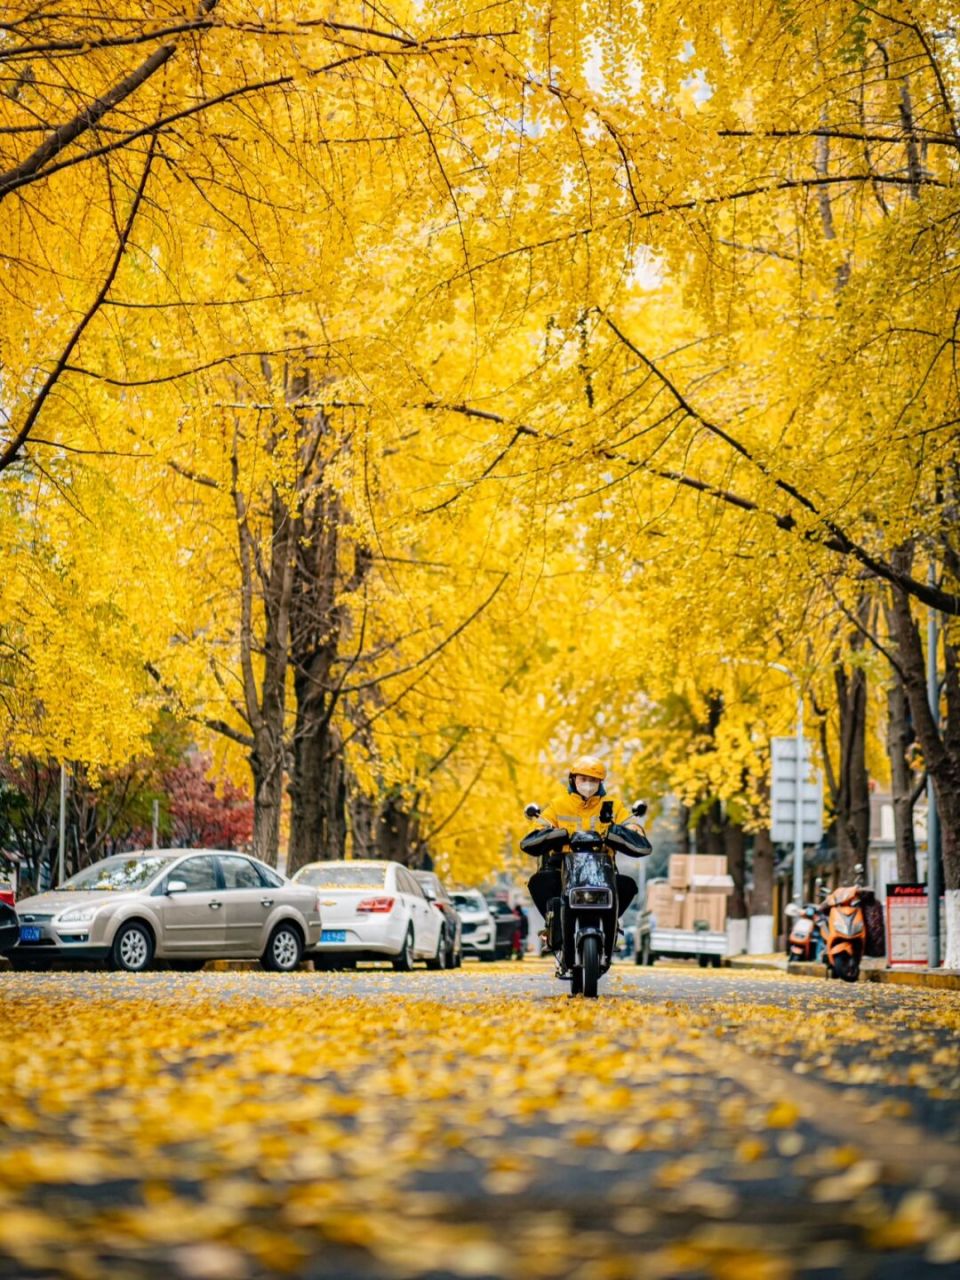 银杏citywalk线路:11月的成都人民有福了  作为成都市的市树,每年在深